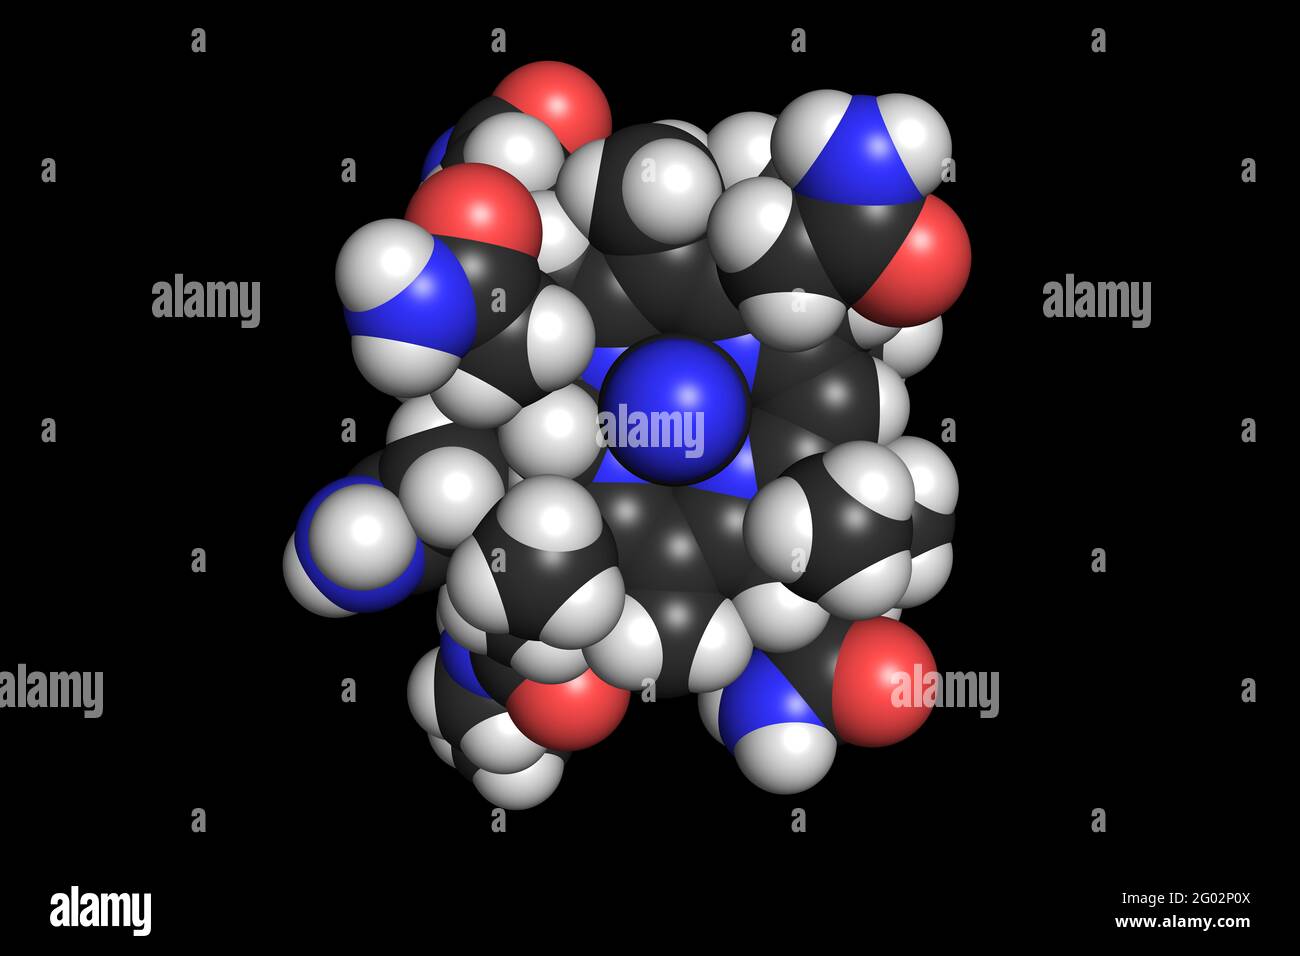 La molécule de cyanocobalamine 3D de la vitamine B12 rend la structure chimique Banque D'Images